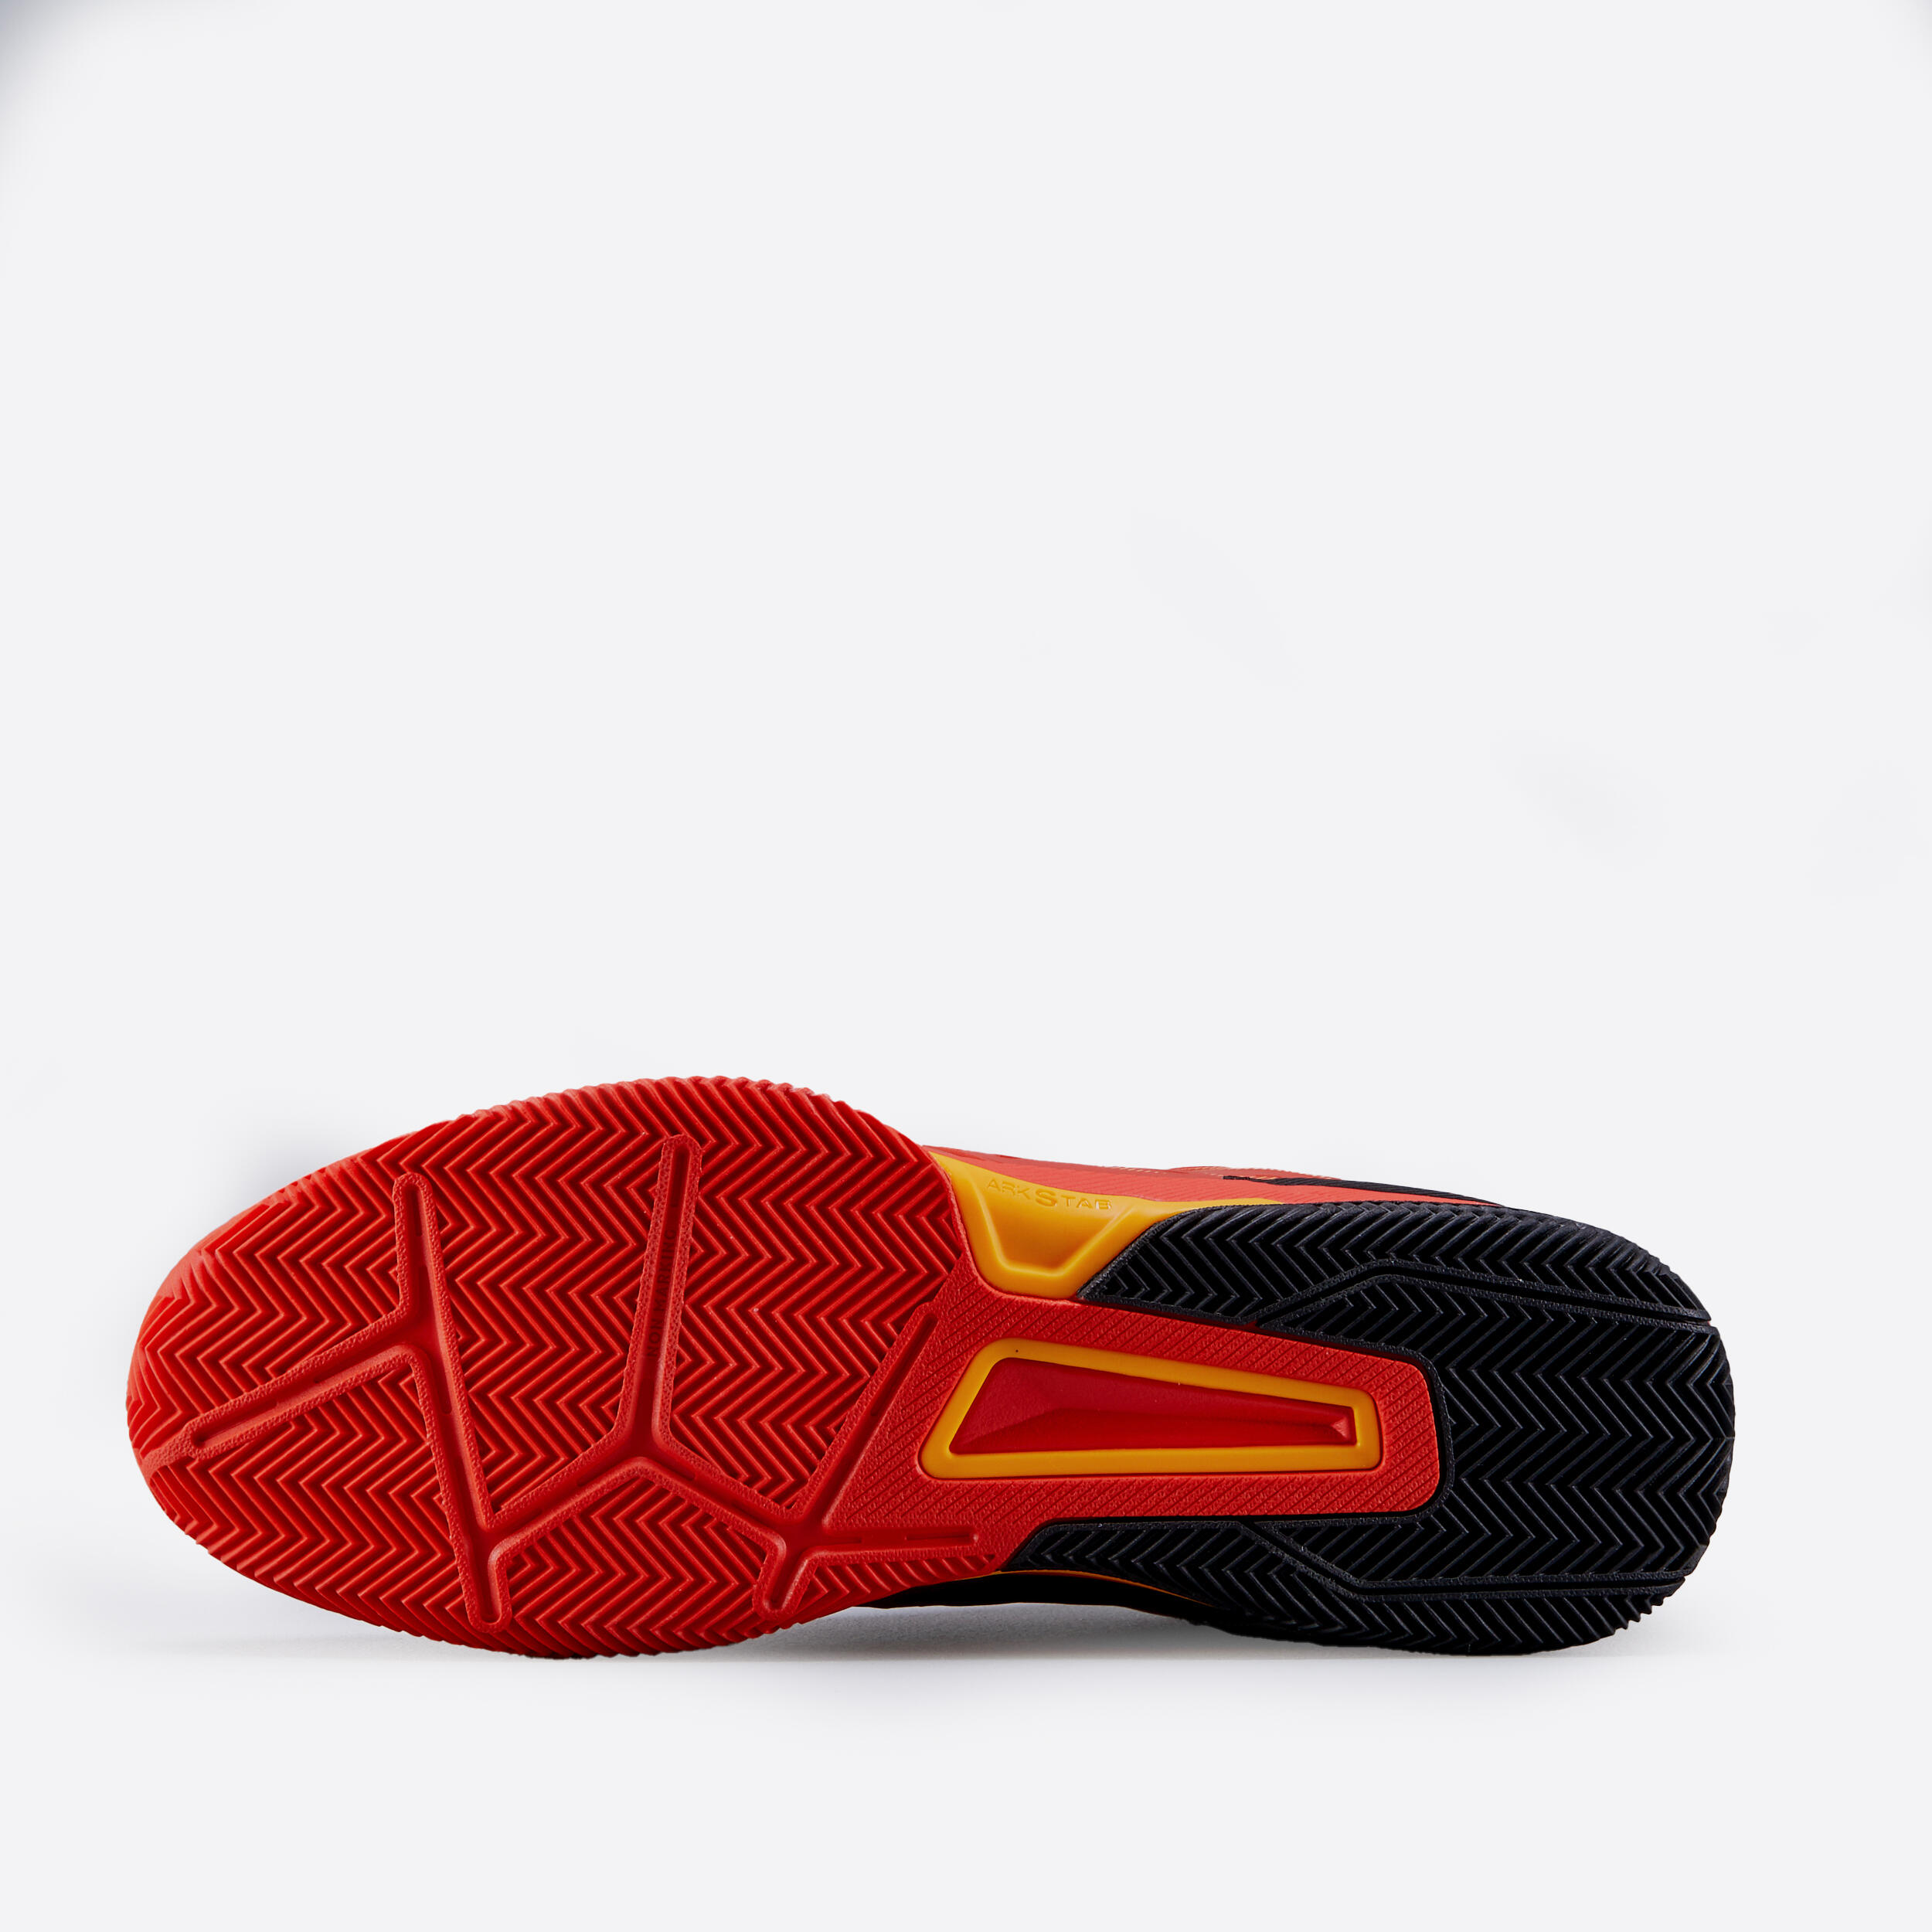 Men's Clay Court Tennis Shoes TS560 - Orange 3/4